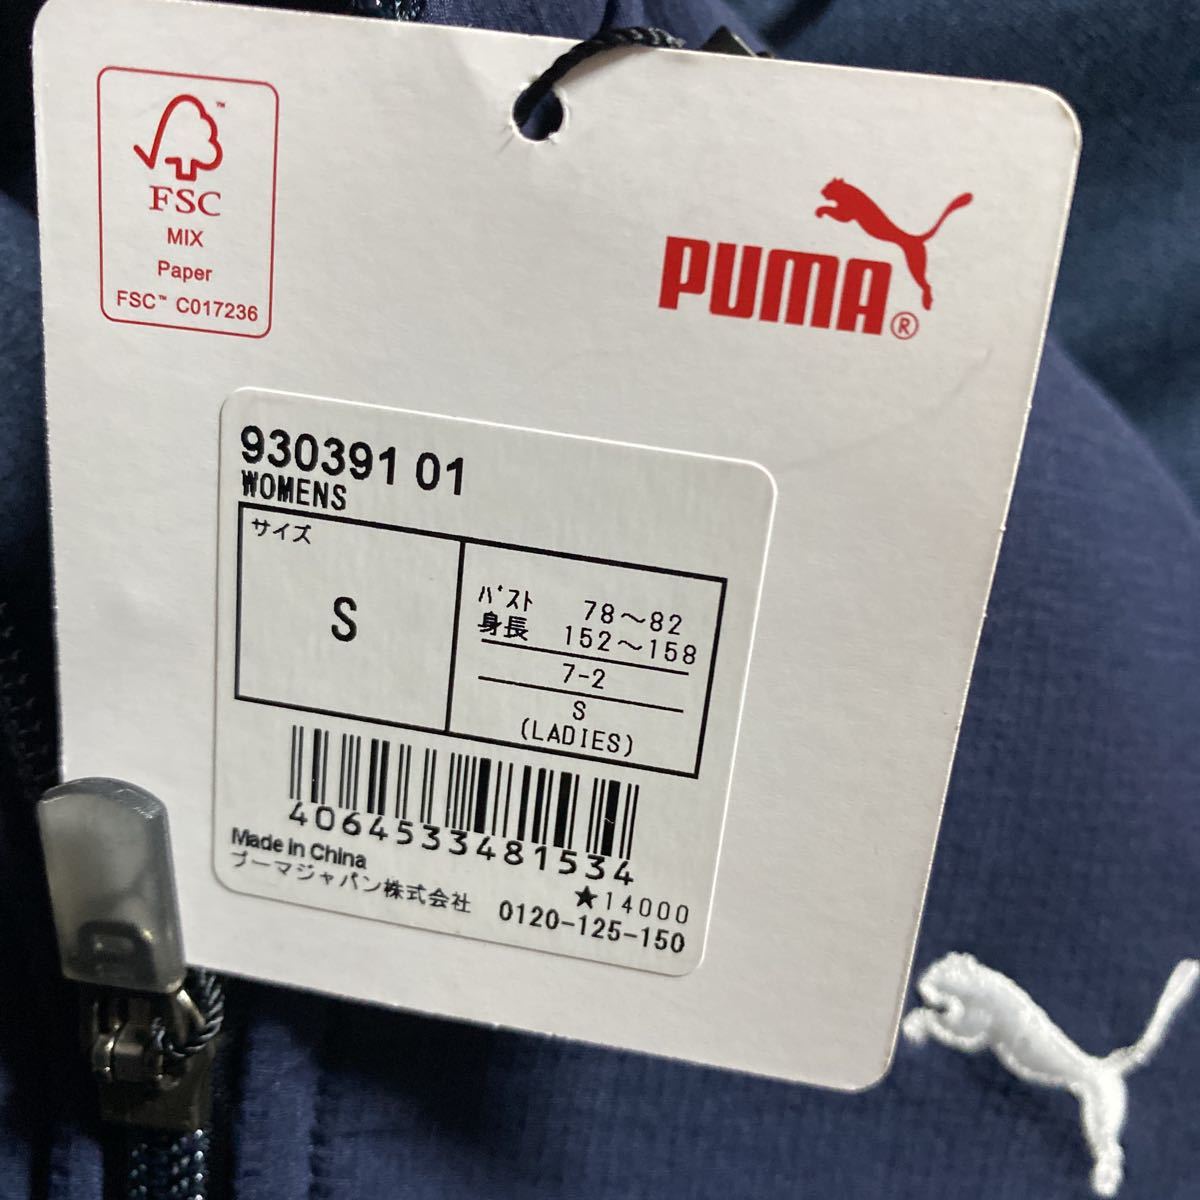  обычная цена 15400 иен PUMA GOLF Puma Golf combination тренировочный f-ti-S размер не использовался 930391 Parker полный Zip tei Lee 